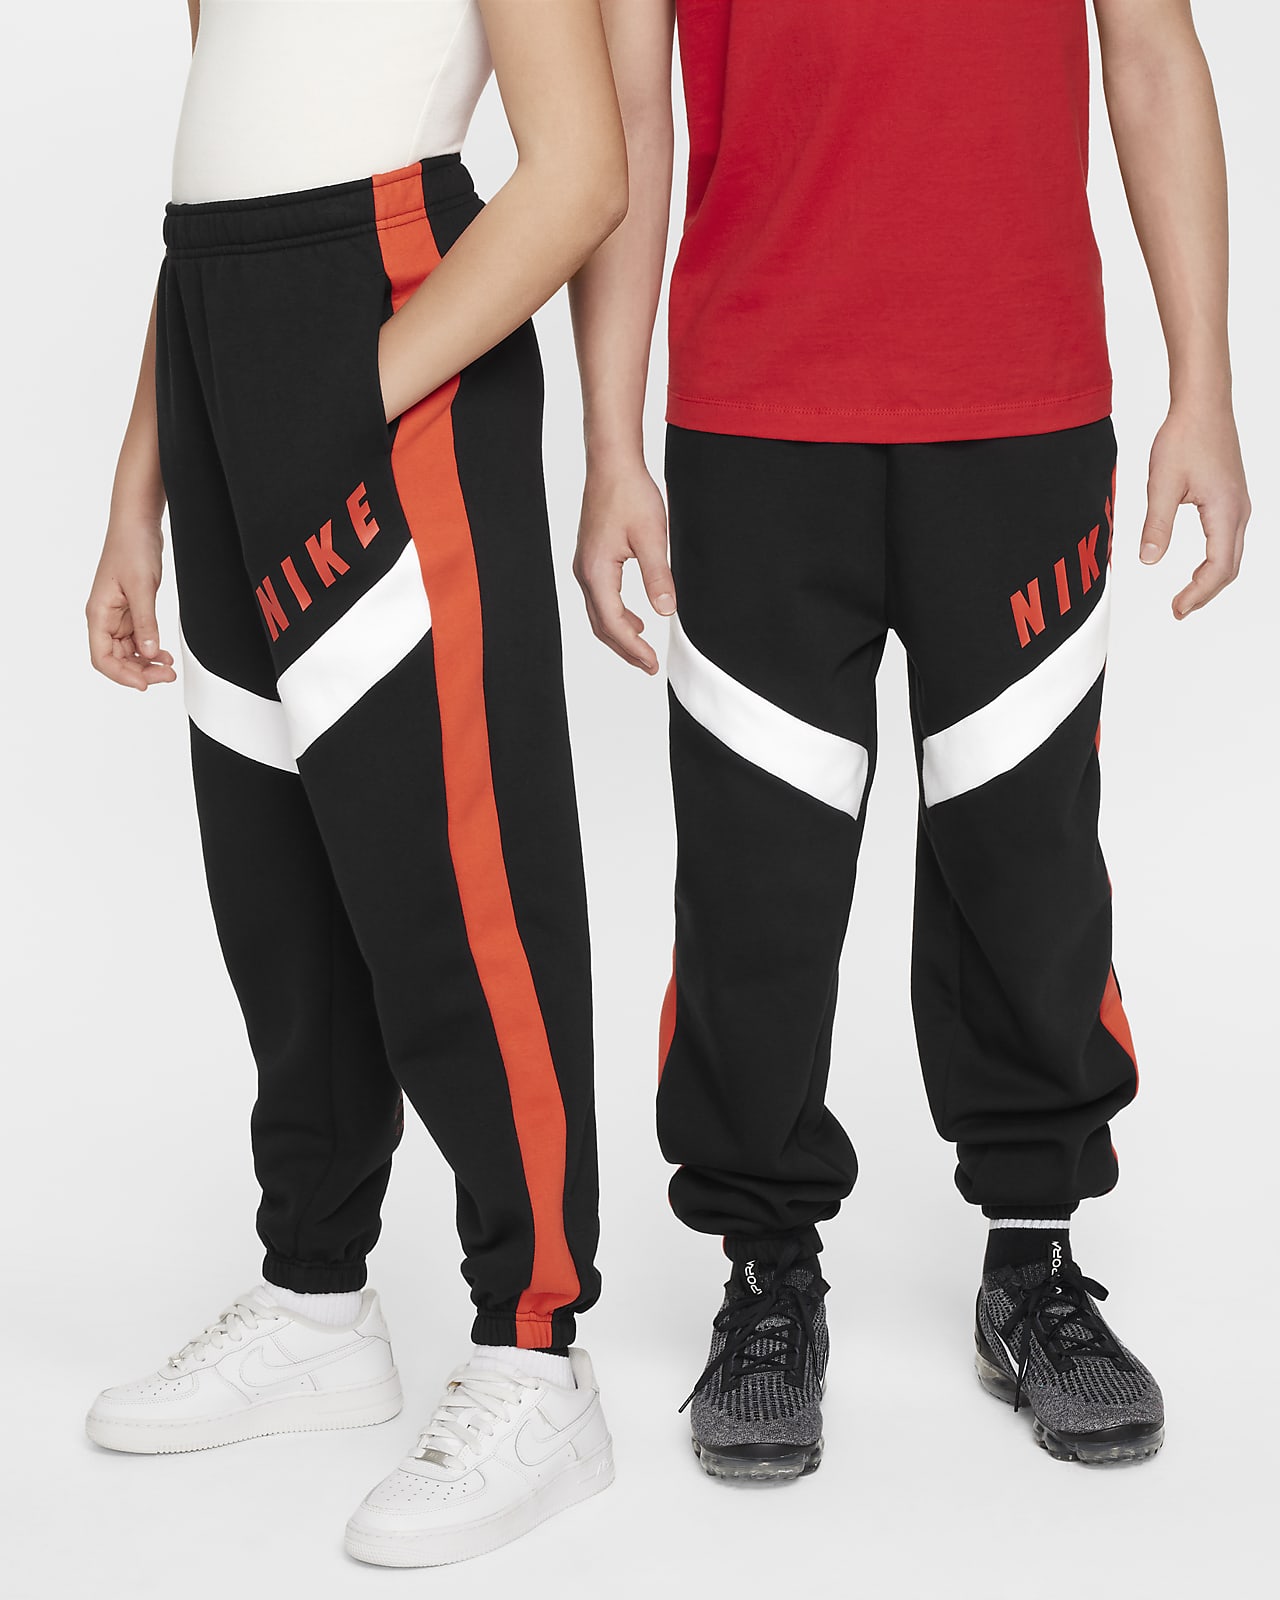 Volné flísové běžecké kalhoty Nike Sportswear pro dívky